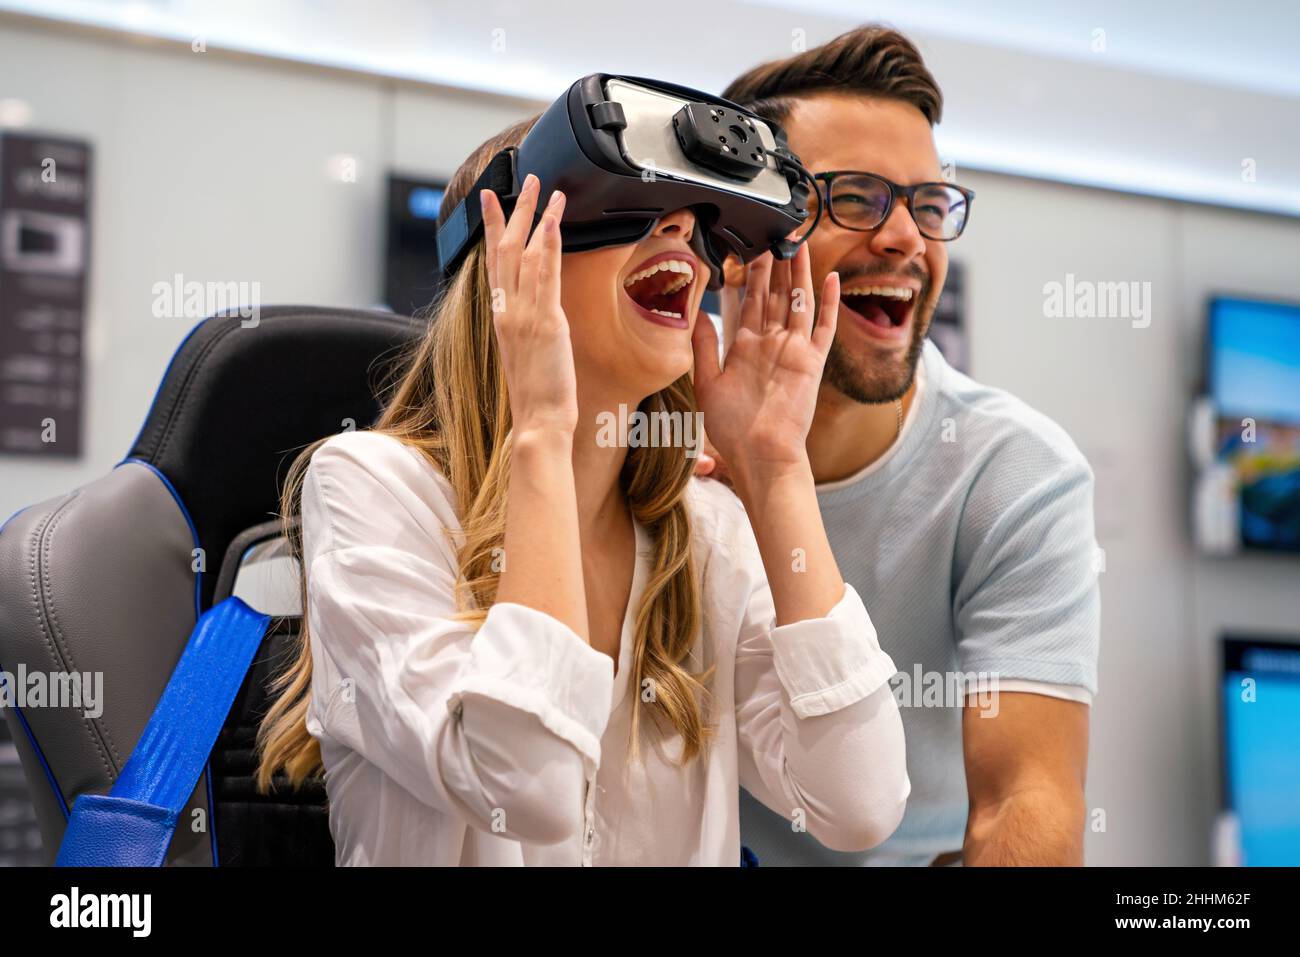 Groupe de personnes utilisant des micro-casques de réalité virtuelle lors d'expositions, de spectacles.Concept de simulation de la technologie VR Banque D'Images